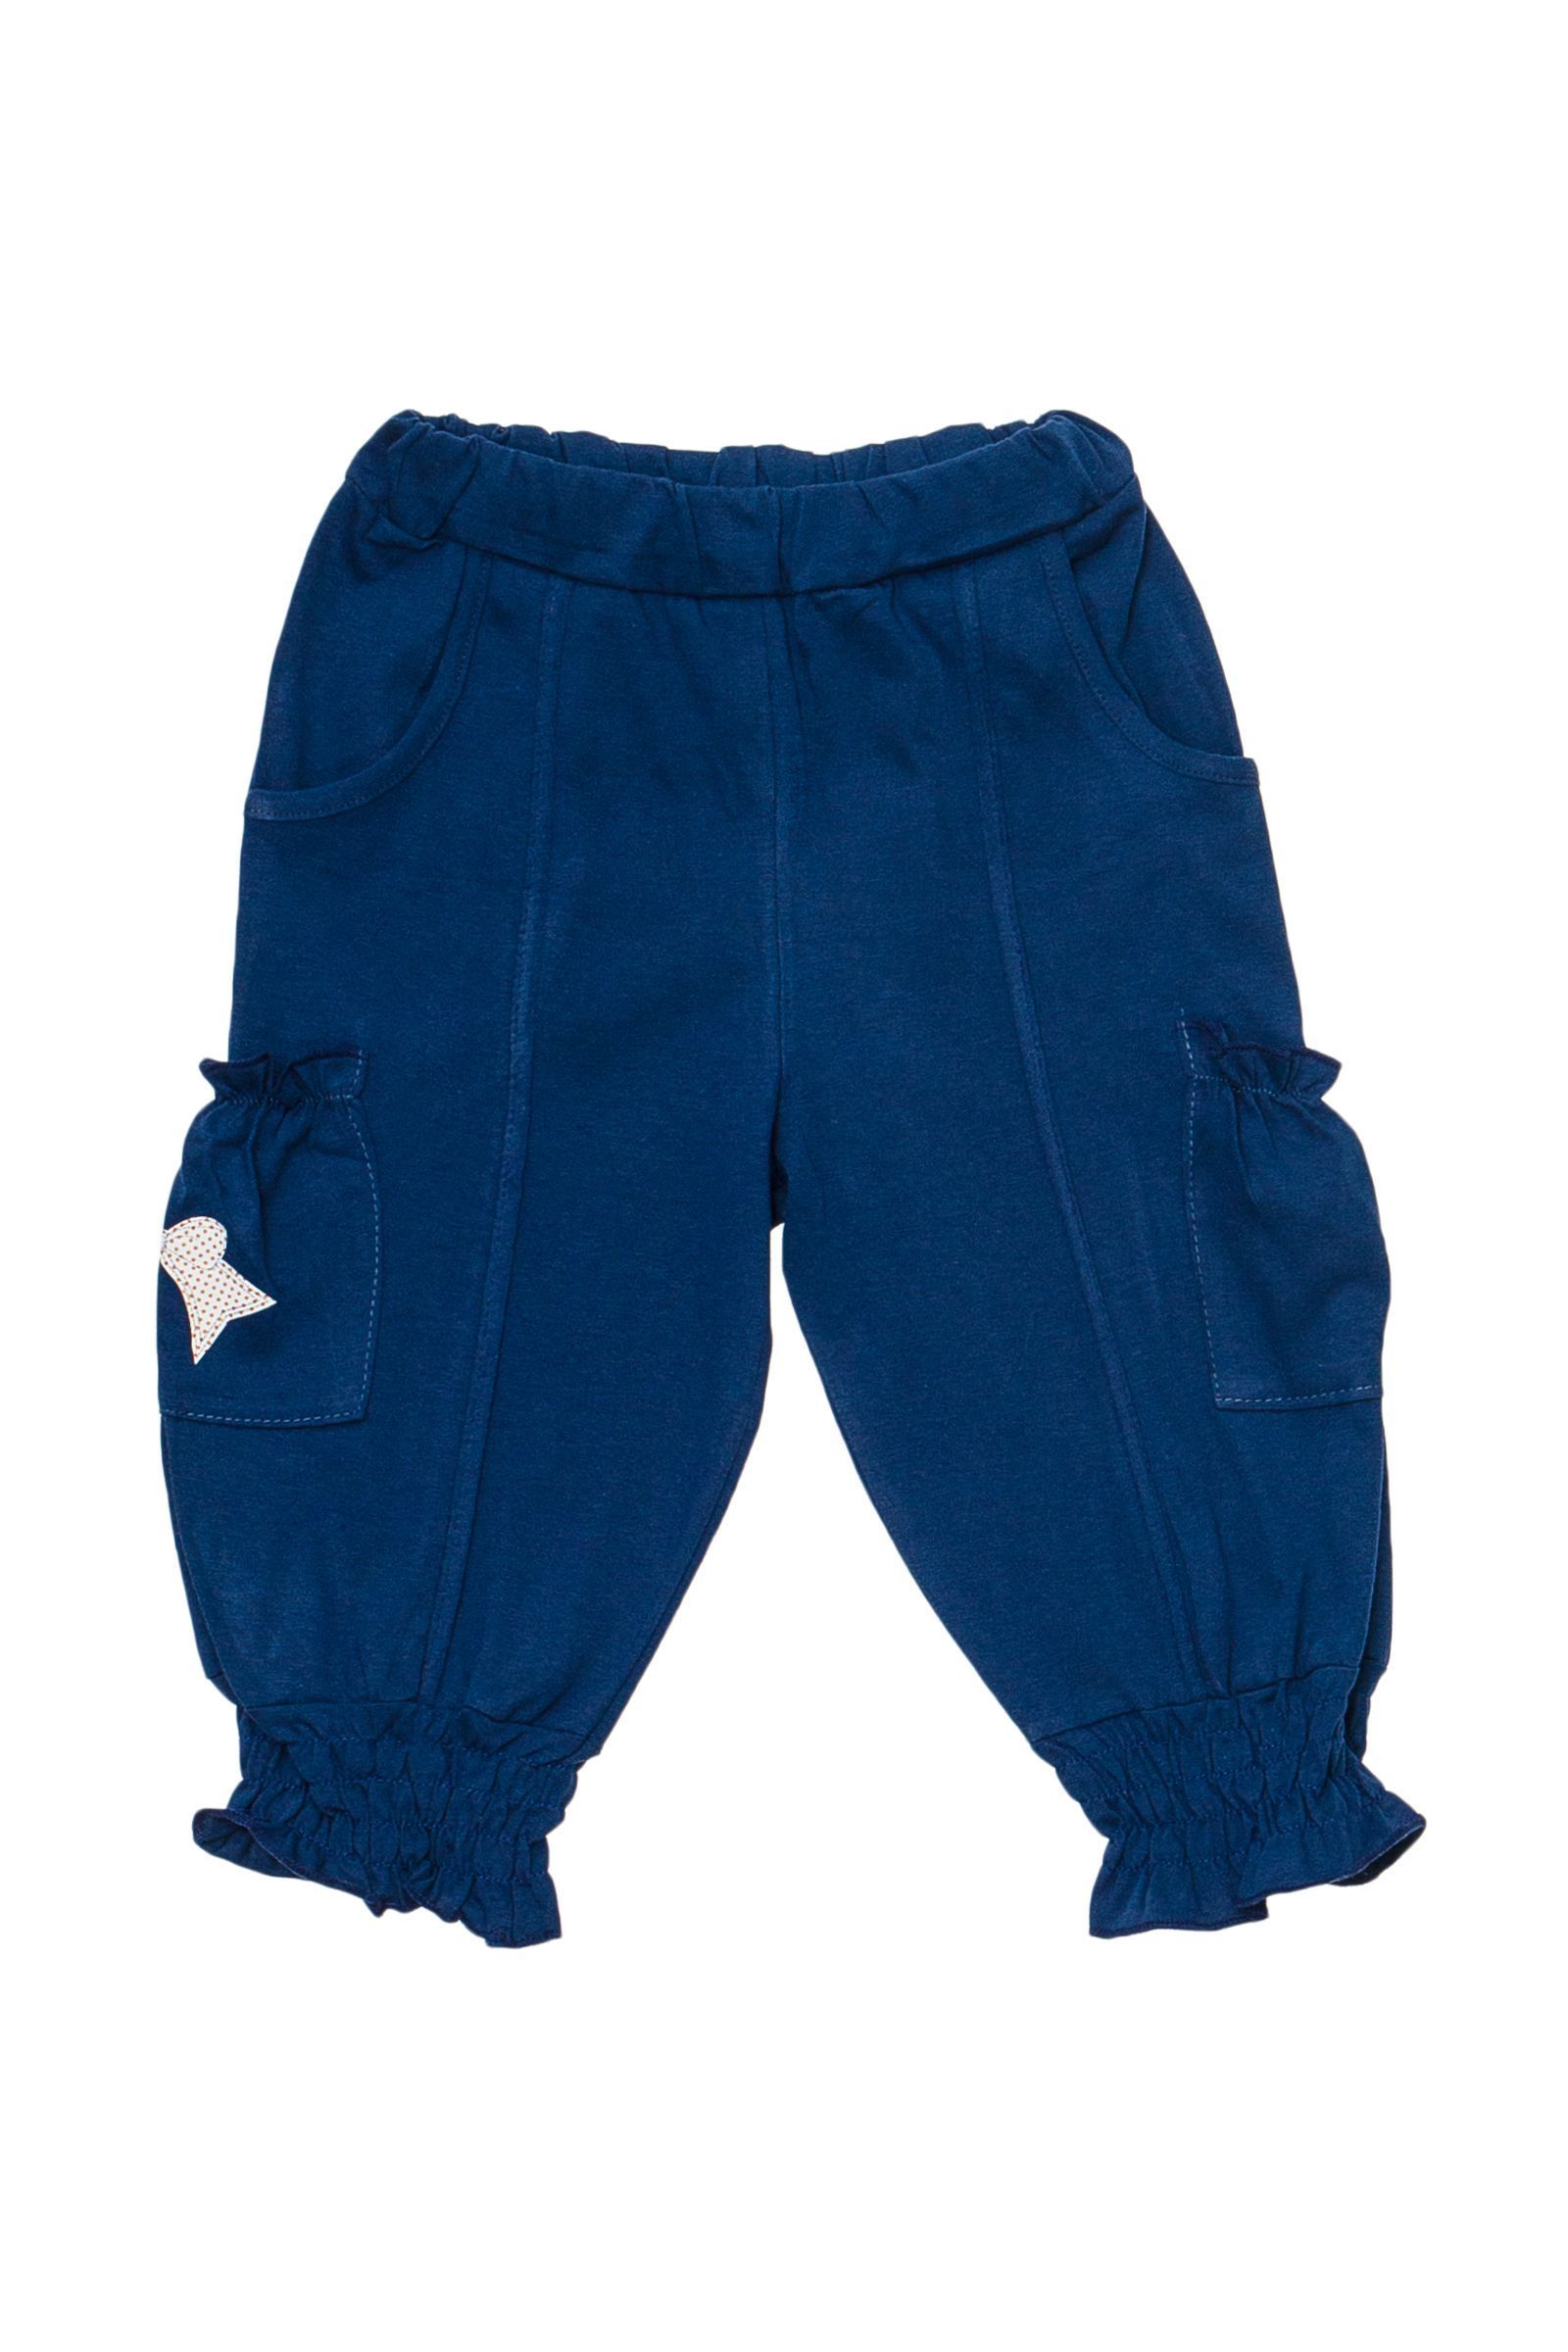 Бриджи-БЖ02-1549 оптом от производителя детской одежды 'Алёна'